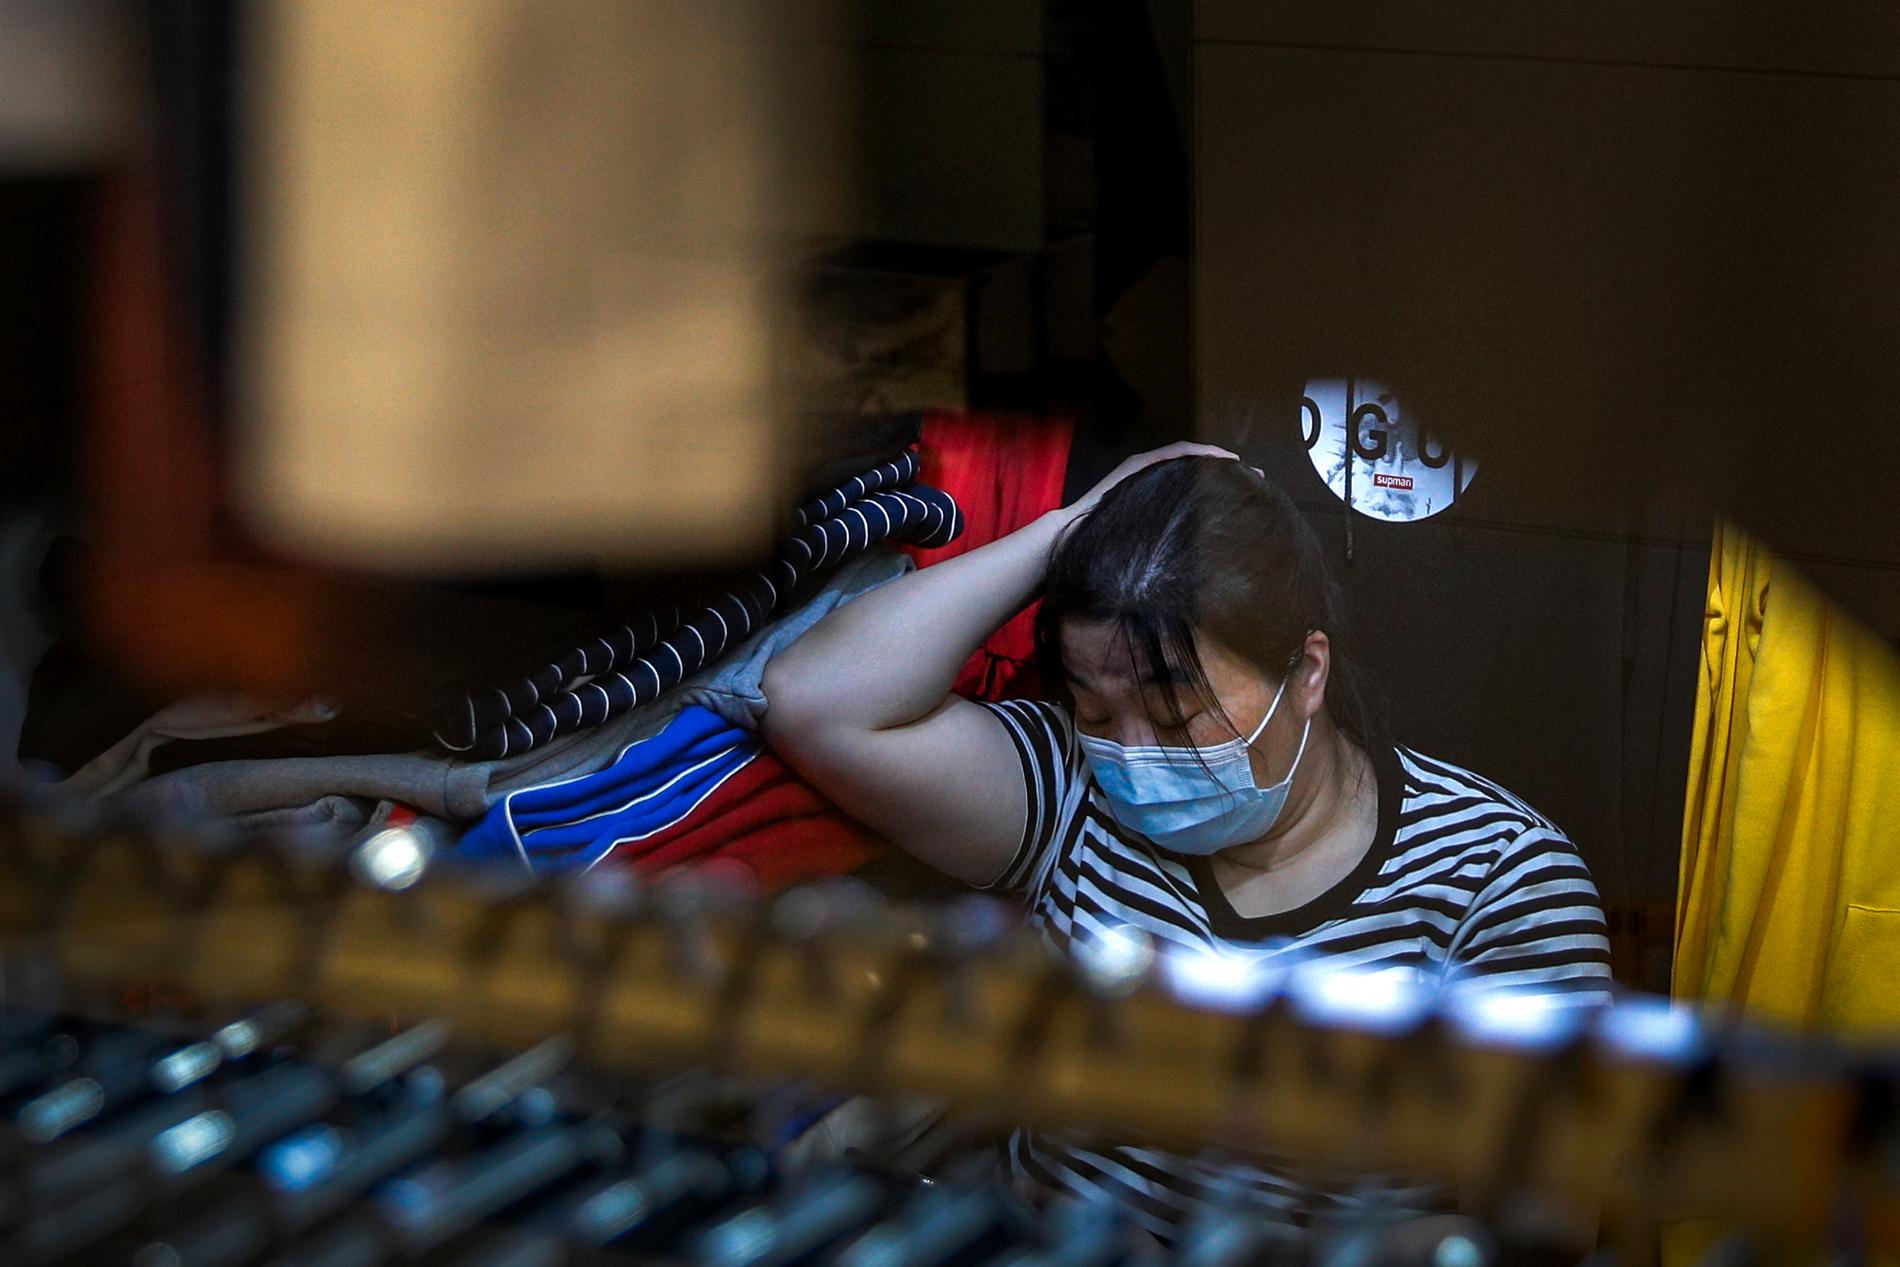 Affärsidkare i Peking tar en lur i sin butik på måndagen.